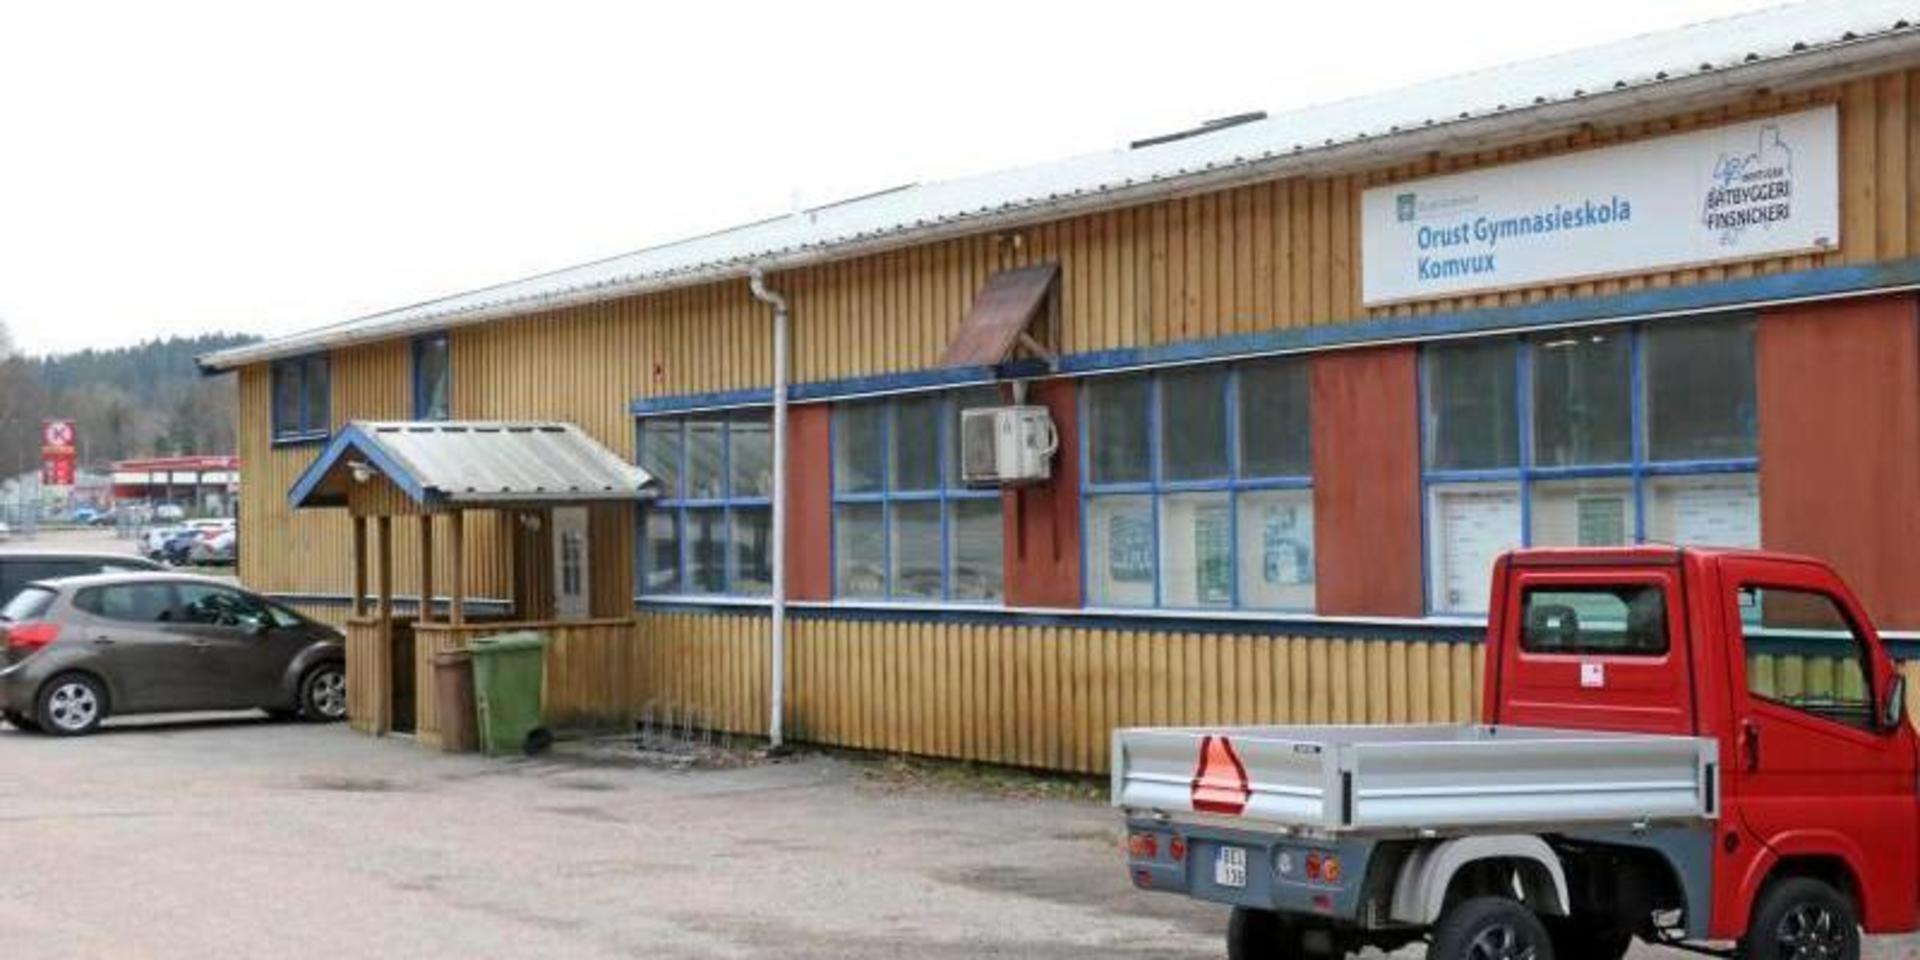 Lokalen ligger i centrala Henån, direkt granne med bussterminalen. När byggnaden är borta ska det bli parkeringsplatser på området. 